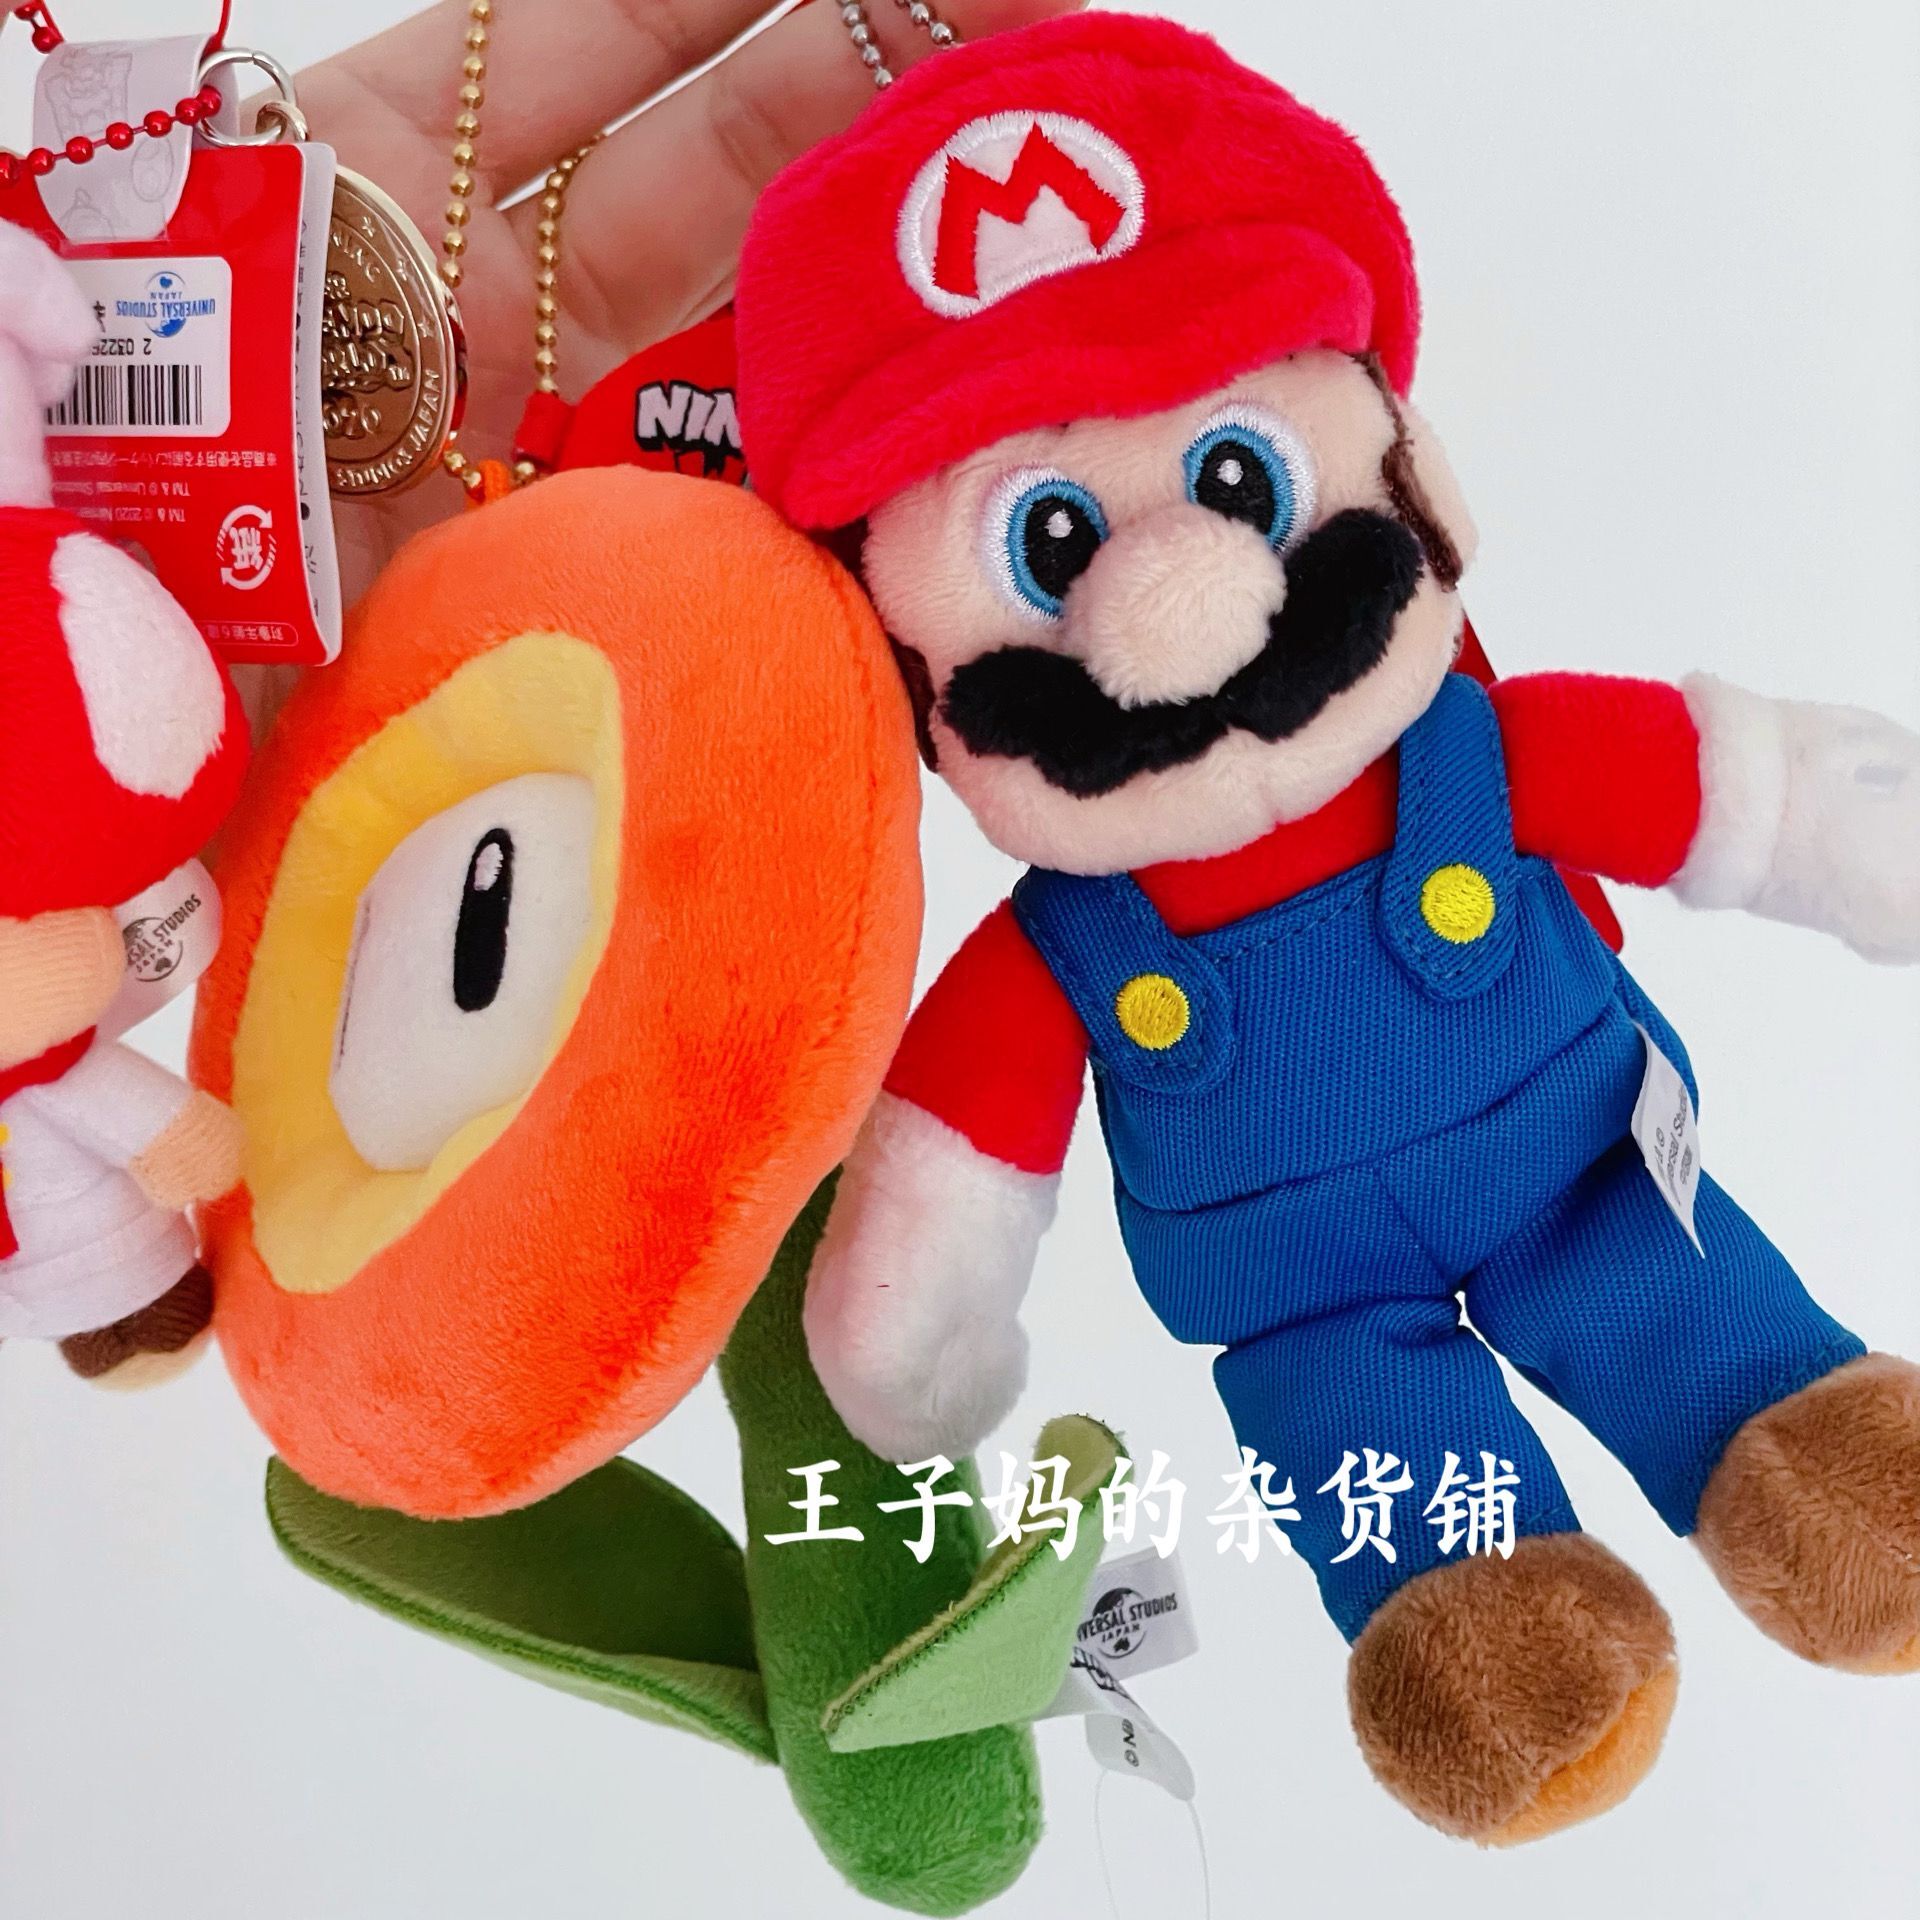 现货日本环球影城内限定马里奥挂件蘑菇头玩偶挂件钥匙挂装饰